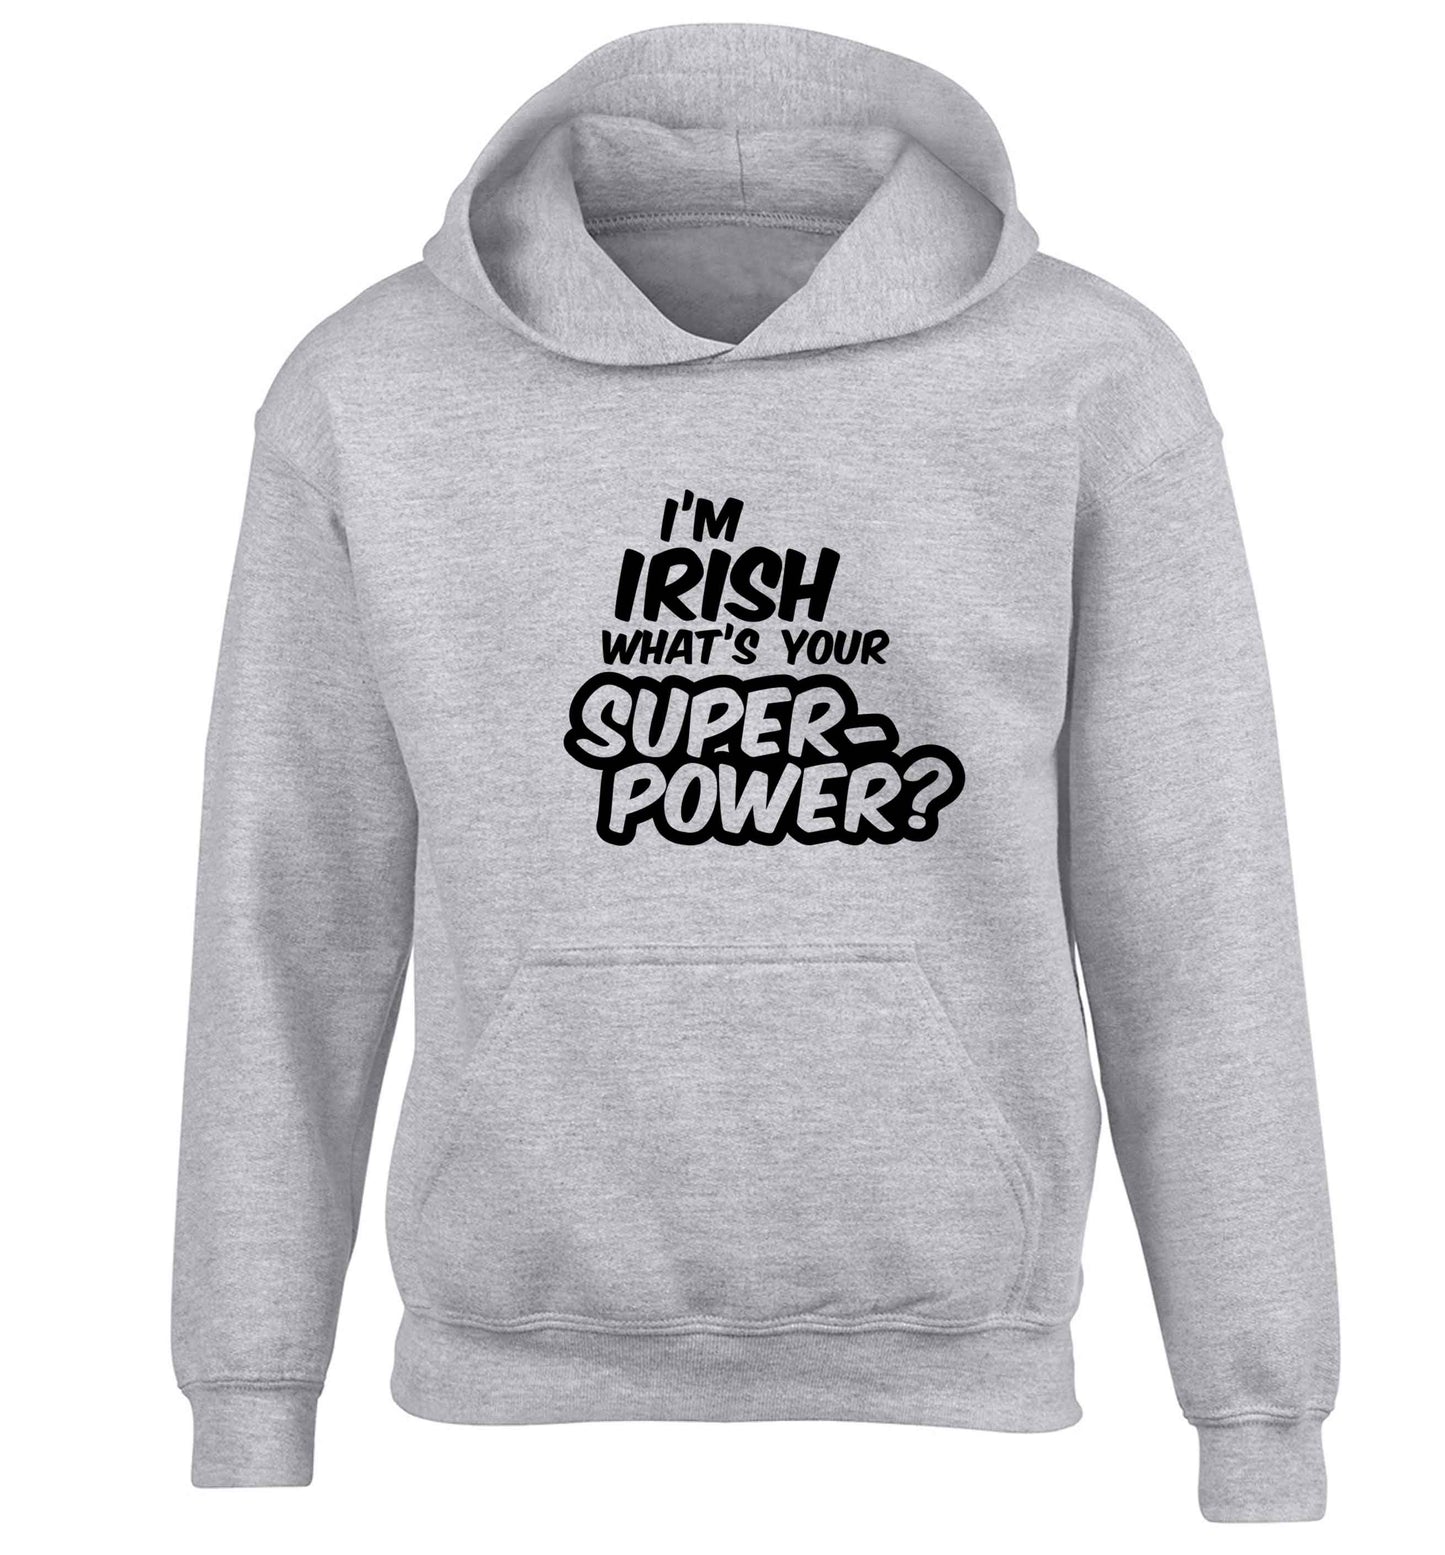 I'm Irish what's your superpower? children's grey hoodie 12-13 Years